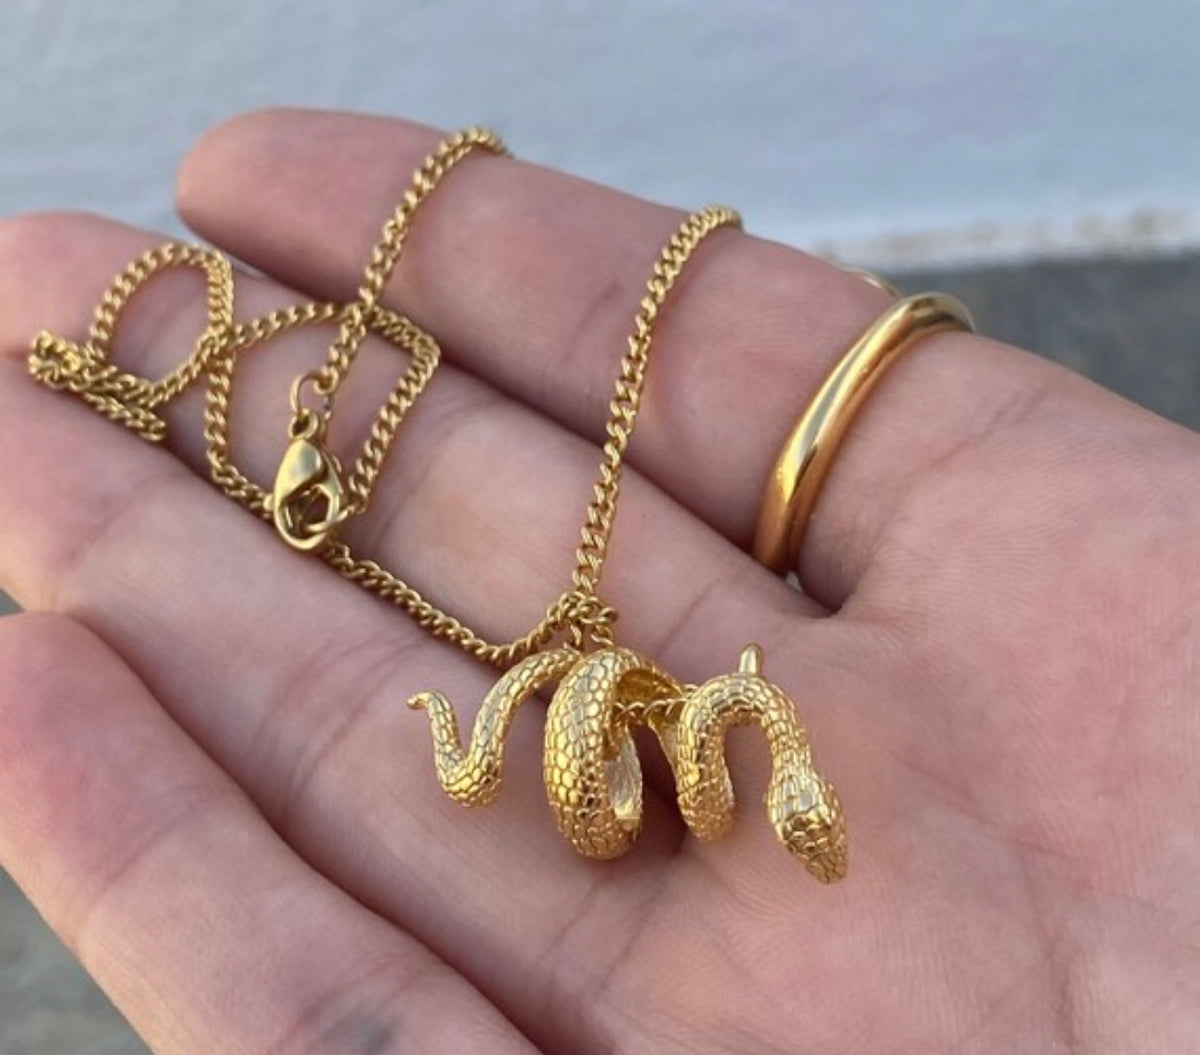 gold snake necklace